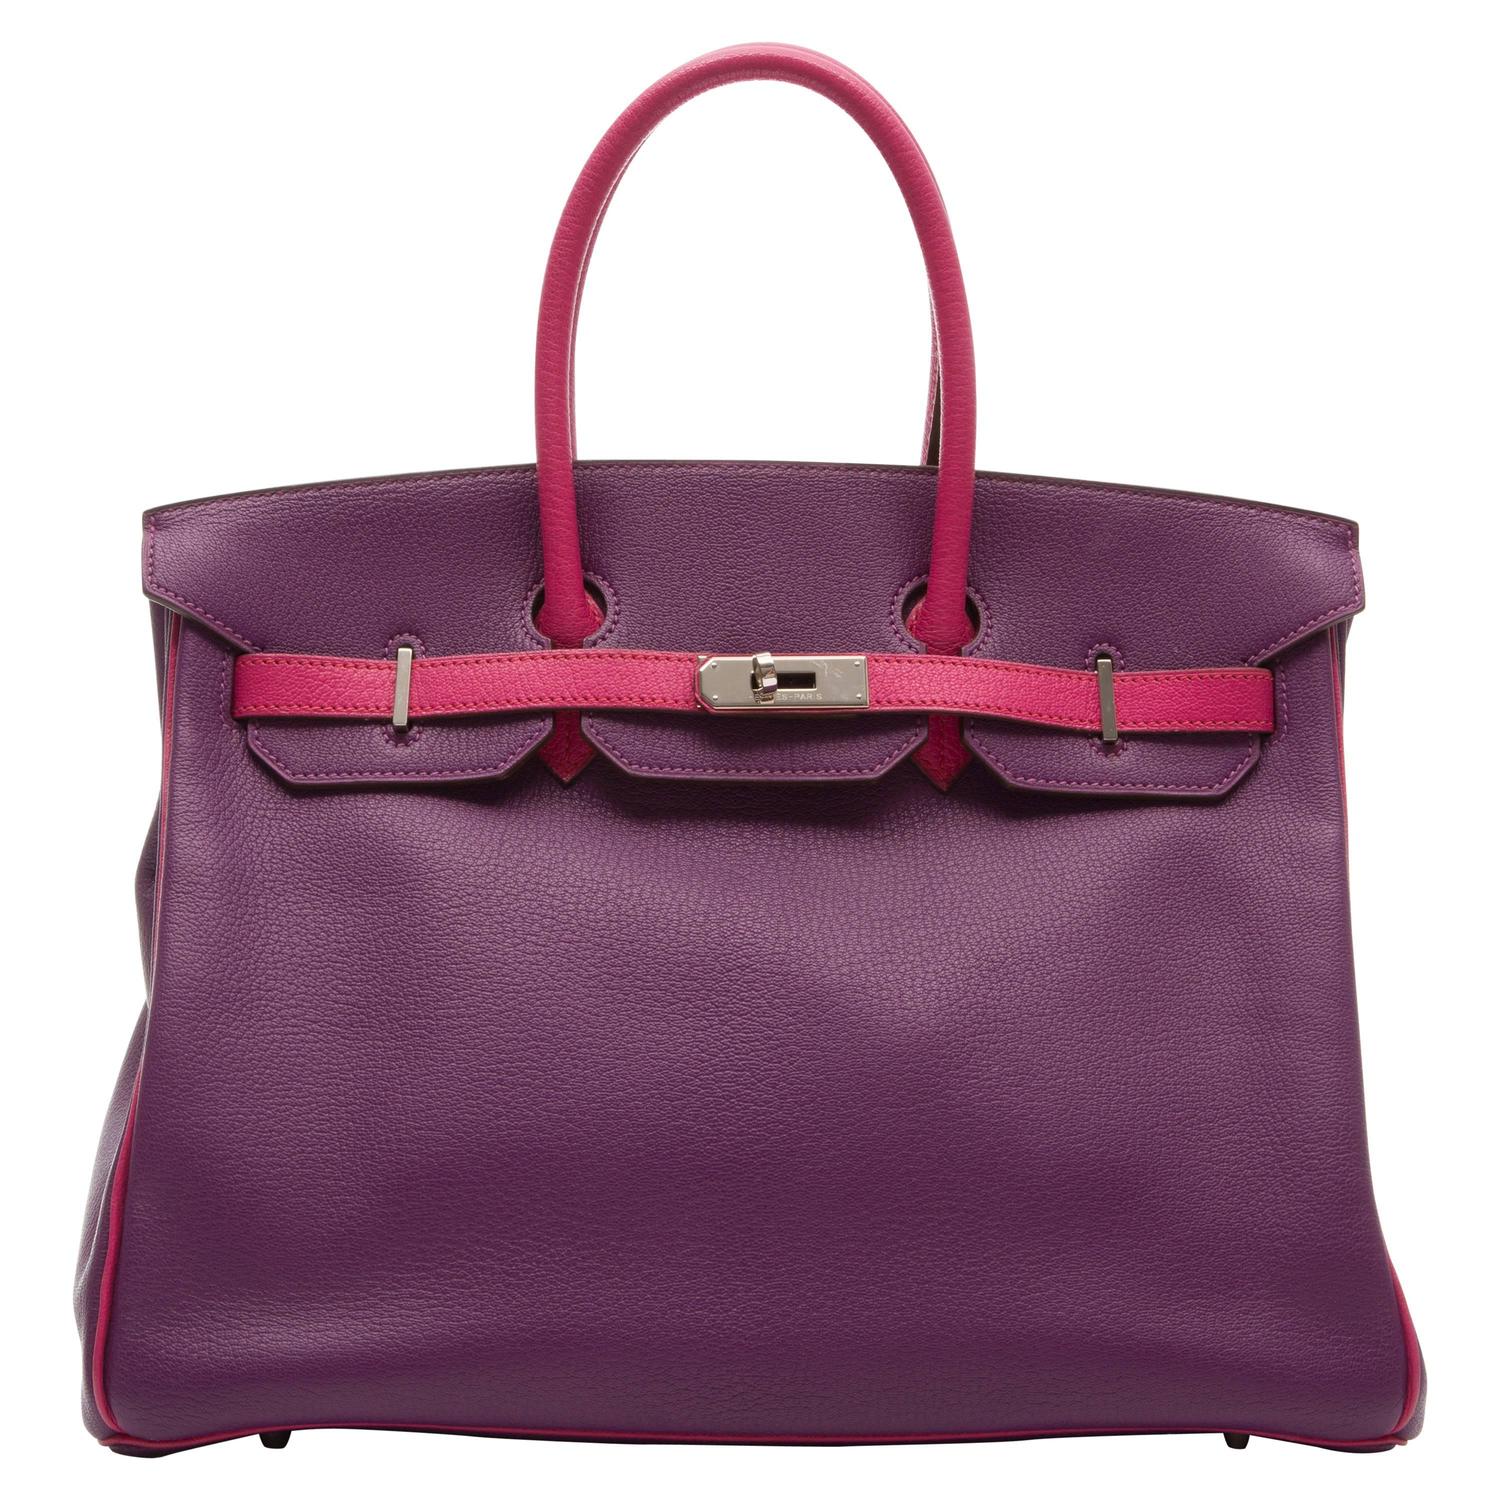 Hermes Violet and Pink Birkin Bag For Sale at 1stdibs